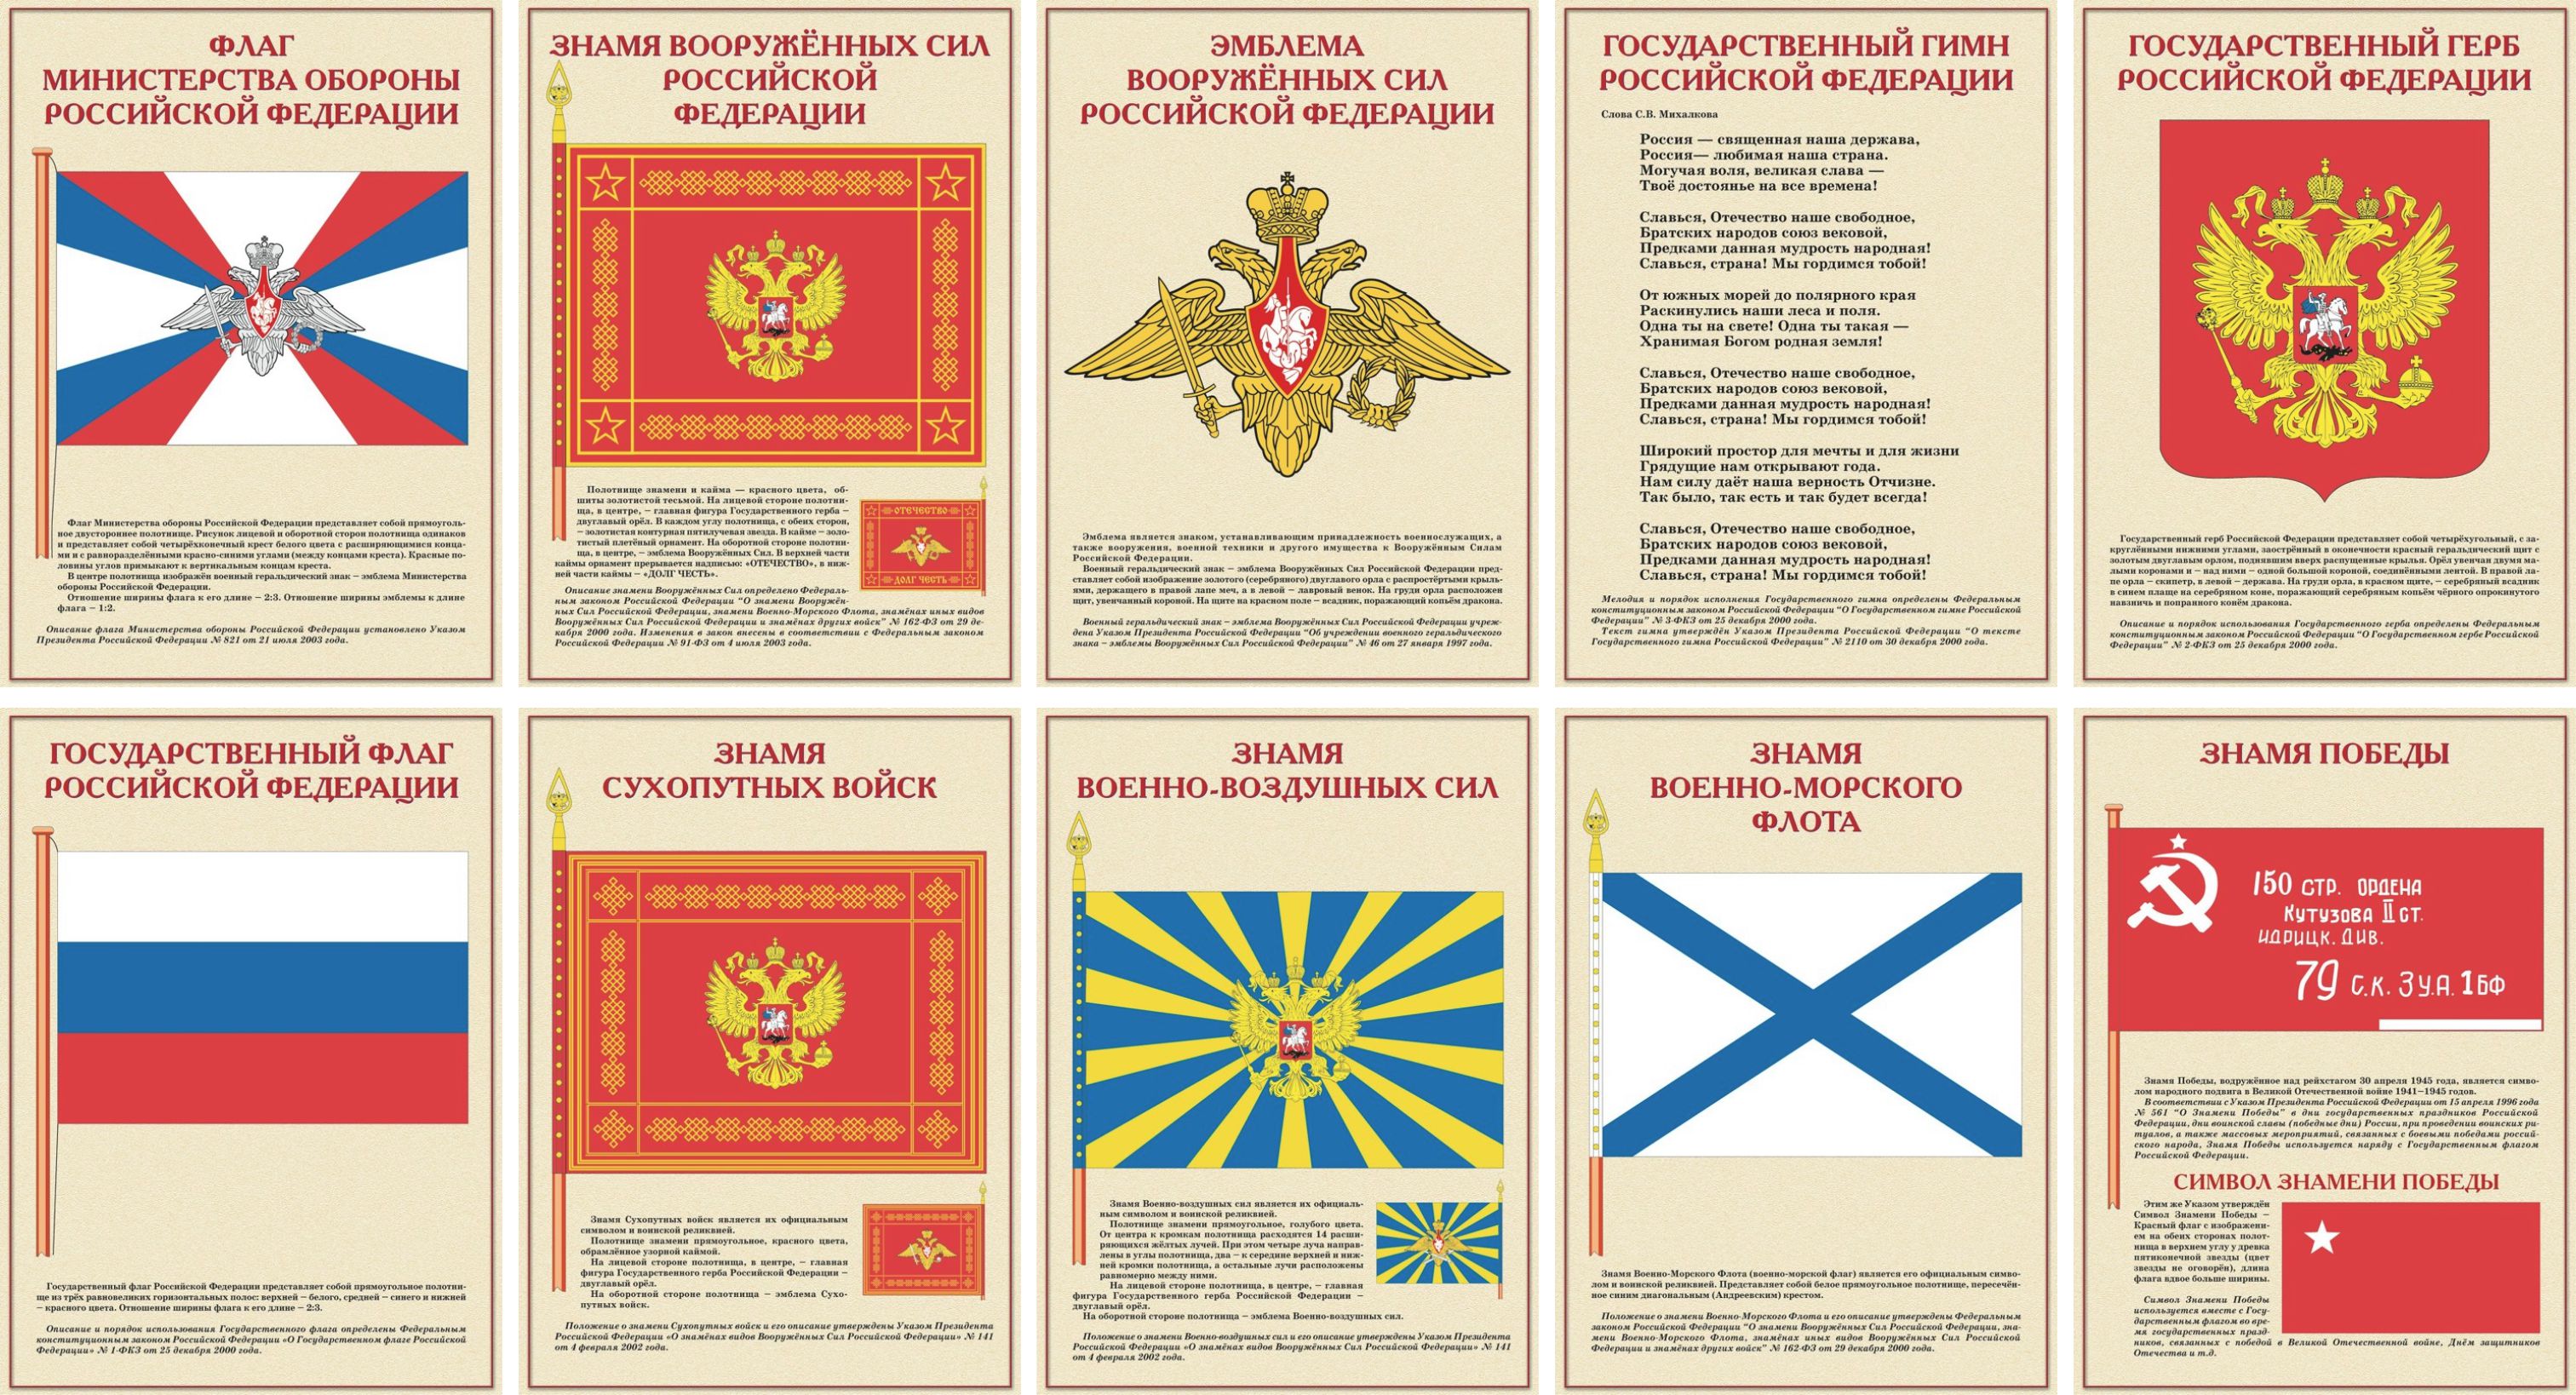 Государственные и военные символы Российской Федерации